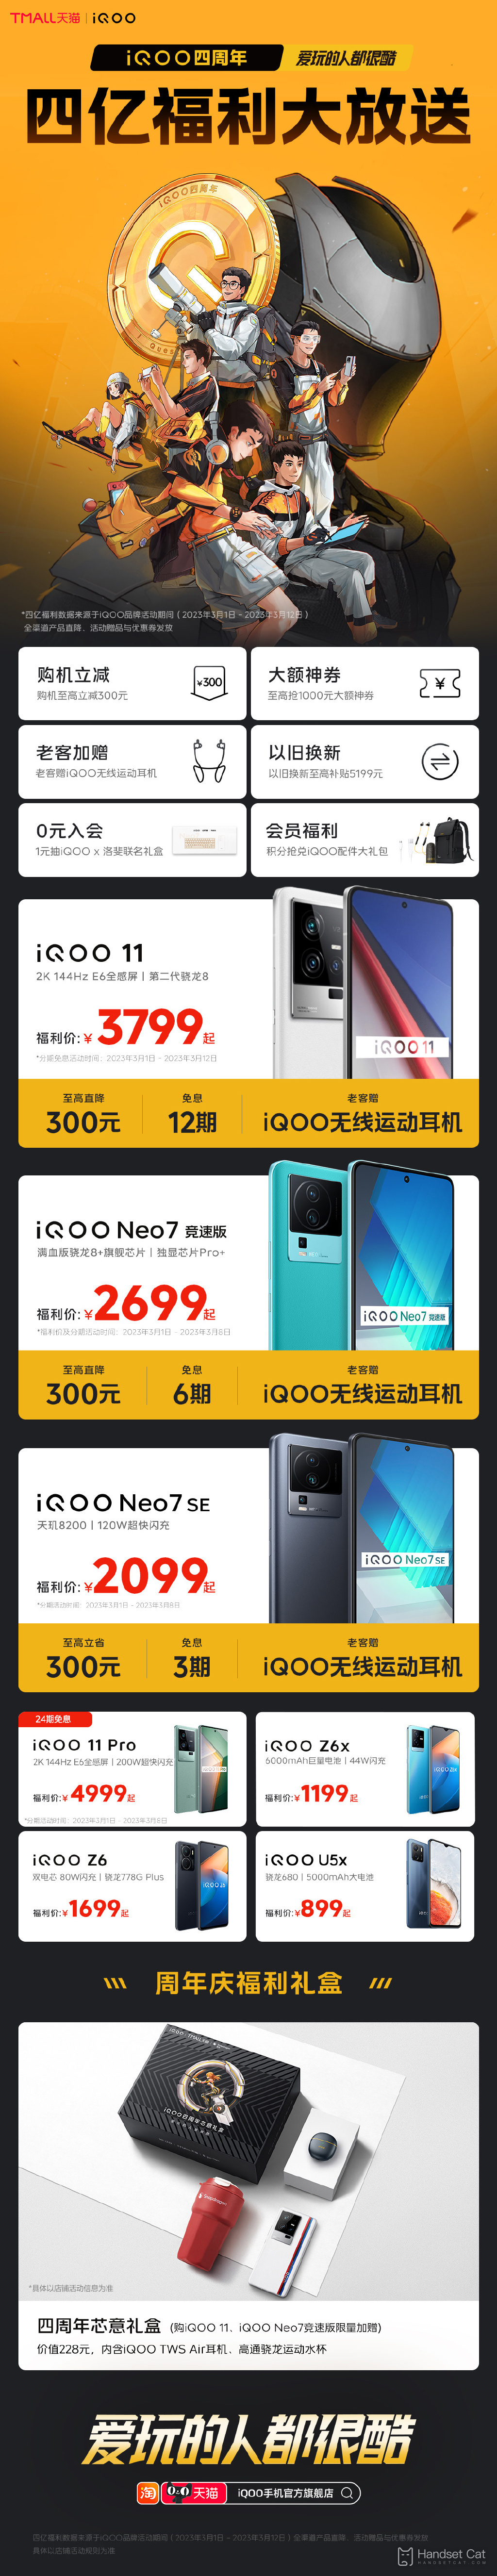 iQOO раздает подарки к своему четвертому юбилею со скидками до 300 юаней на iQOO 11 и другие модели.